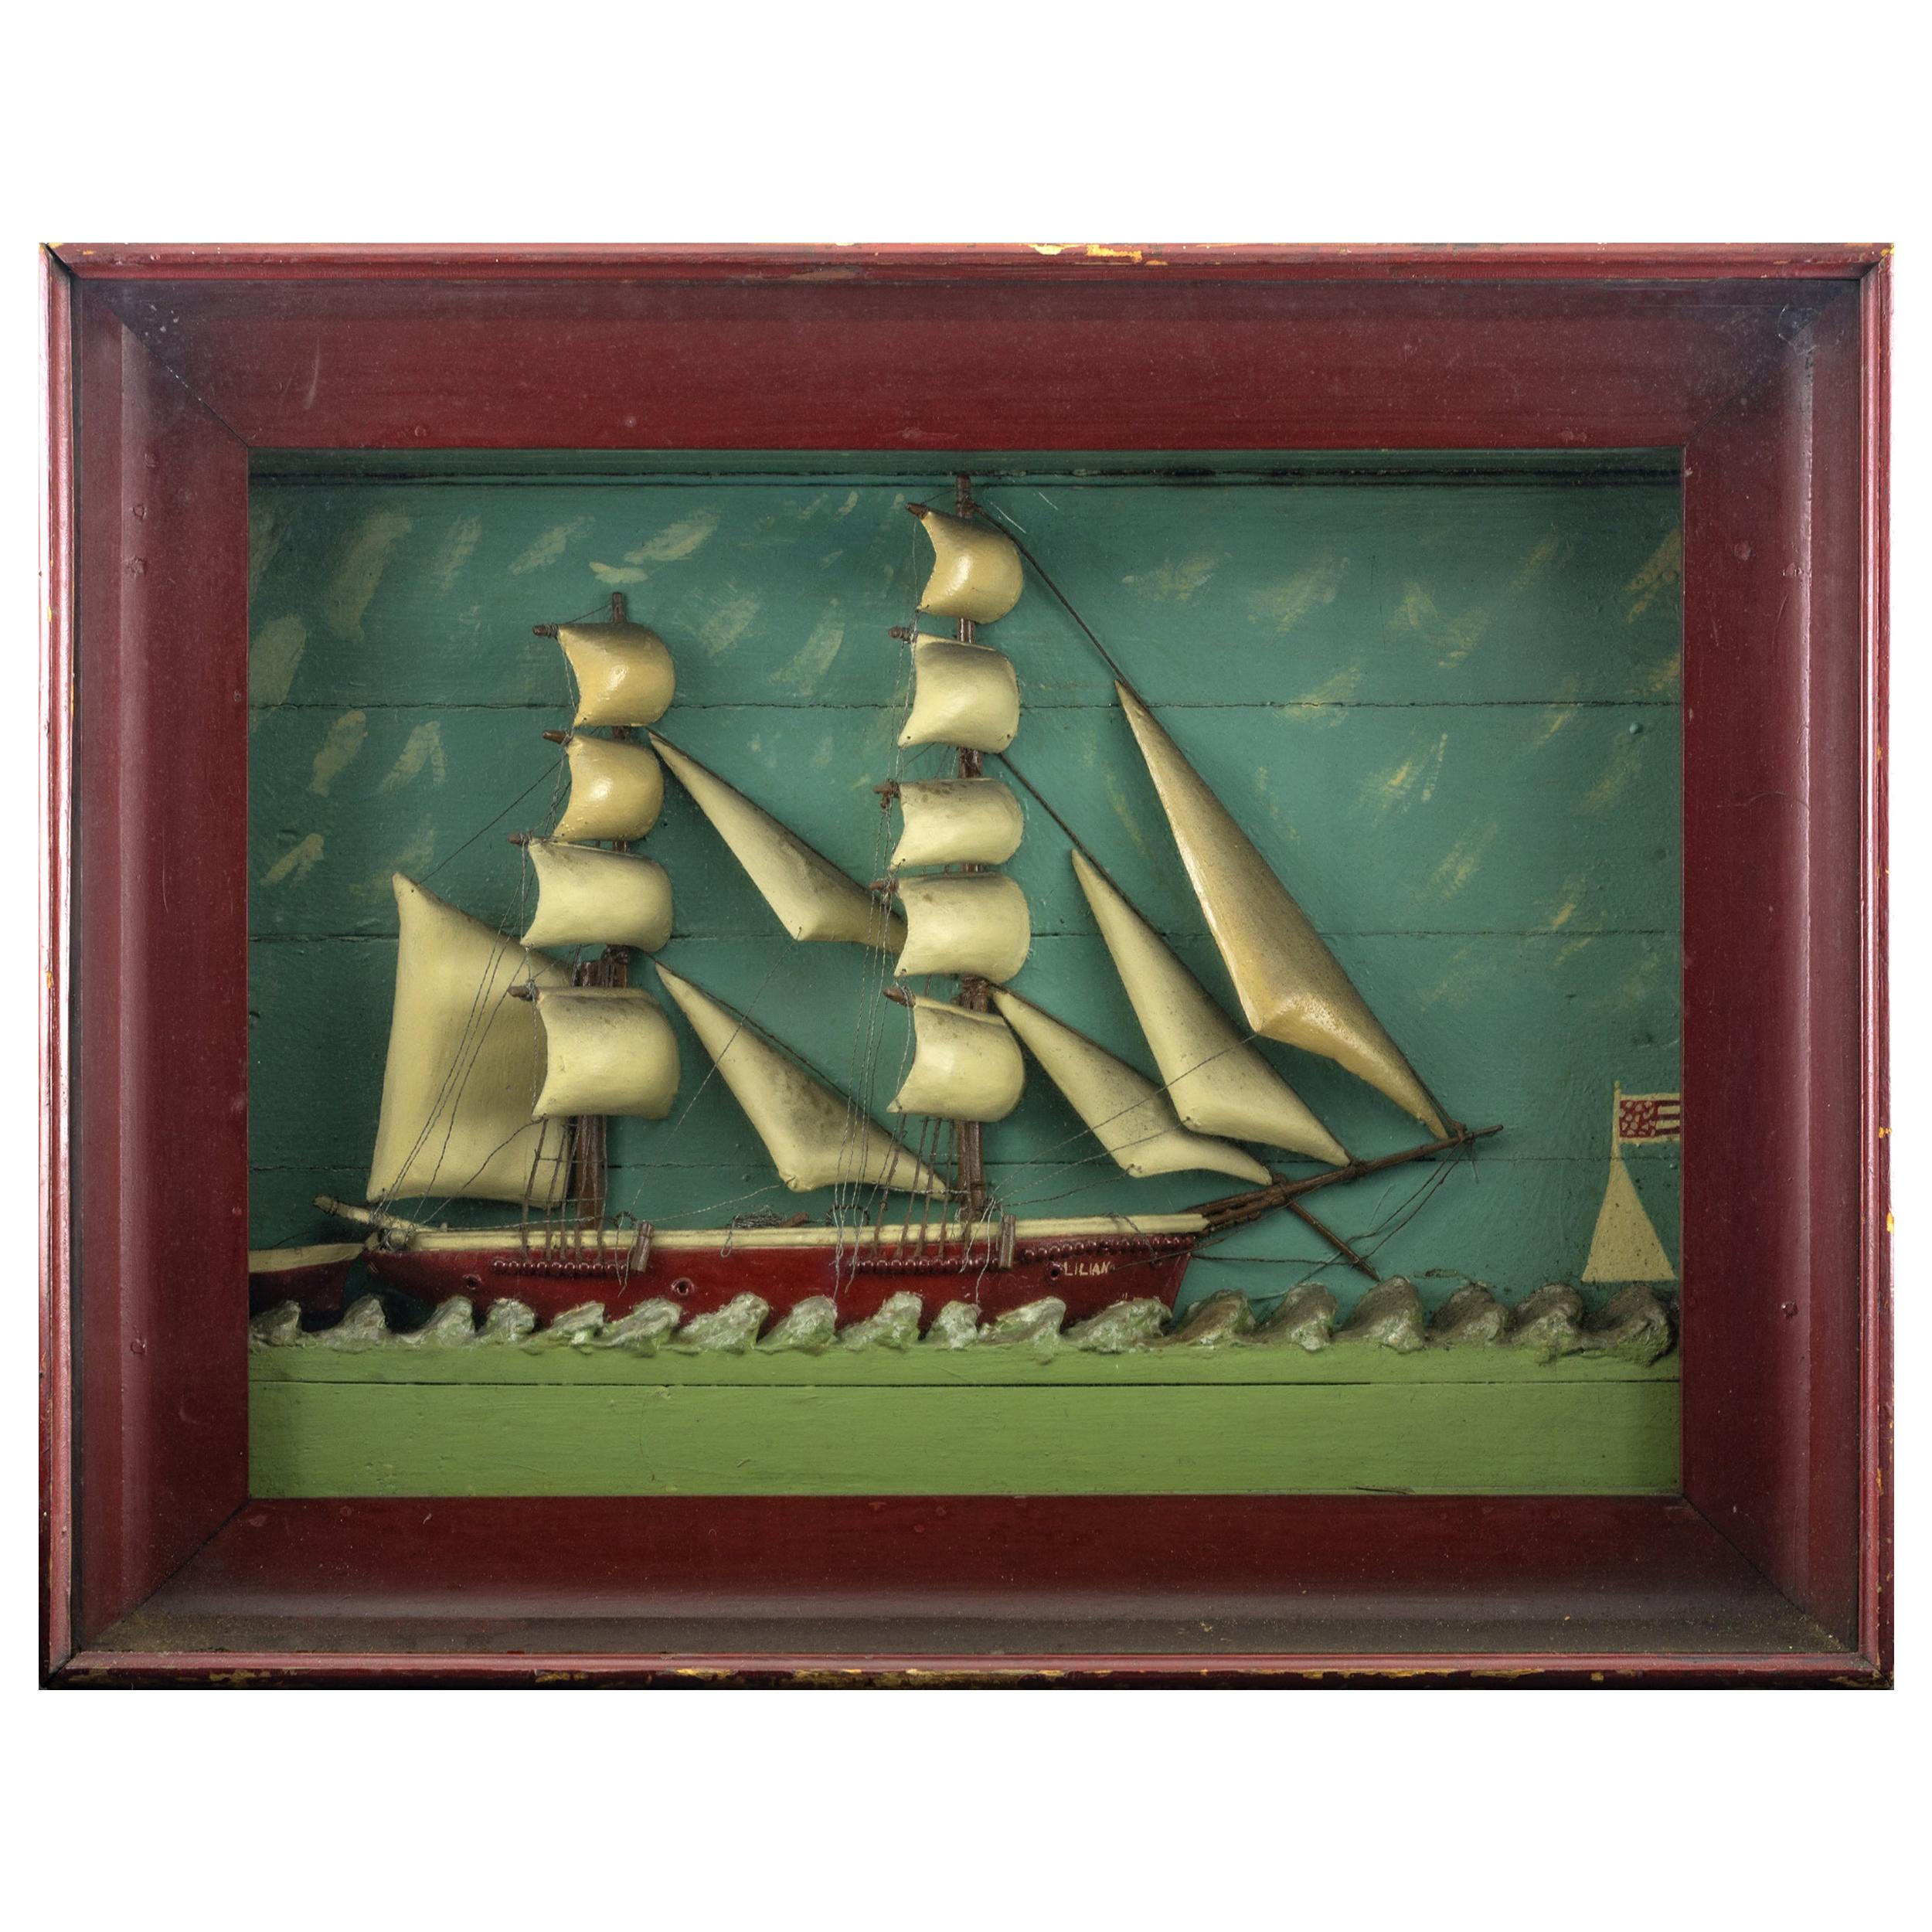 Ship Diorama of the Vessel "Lillian"